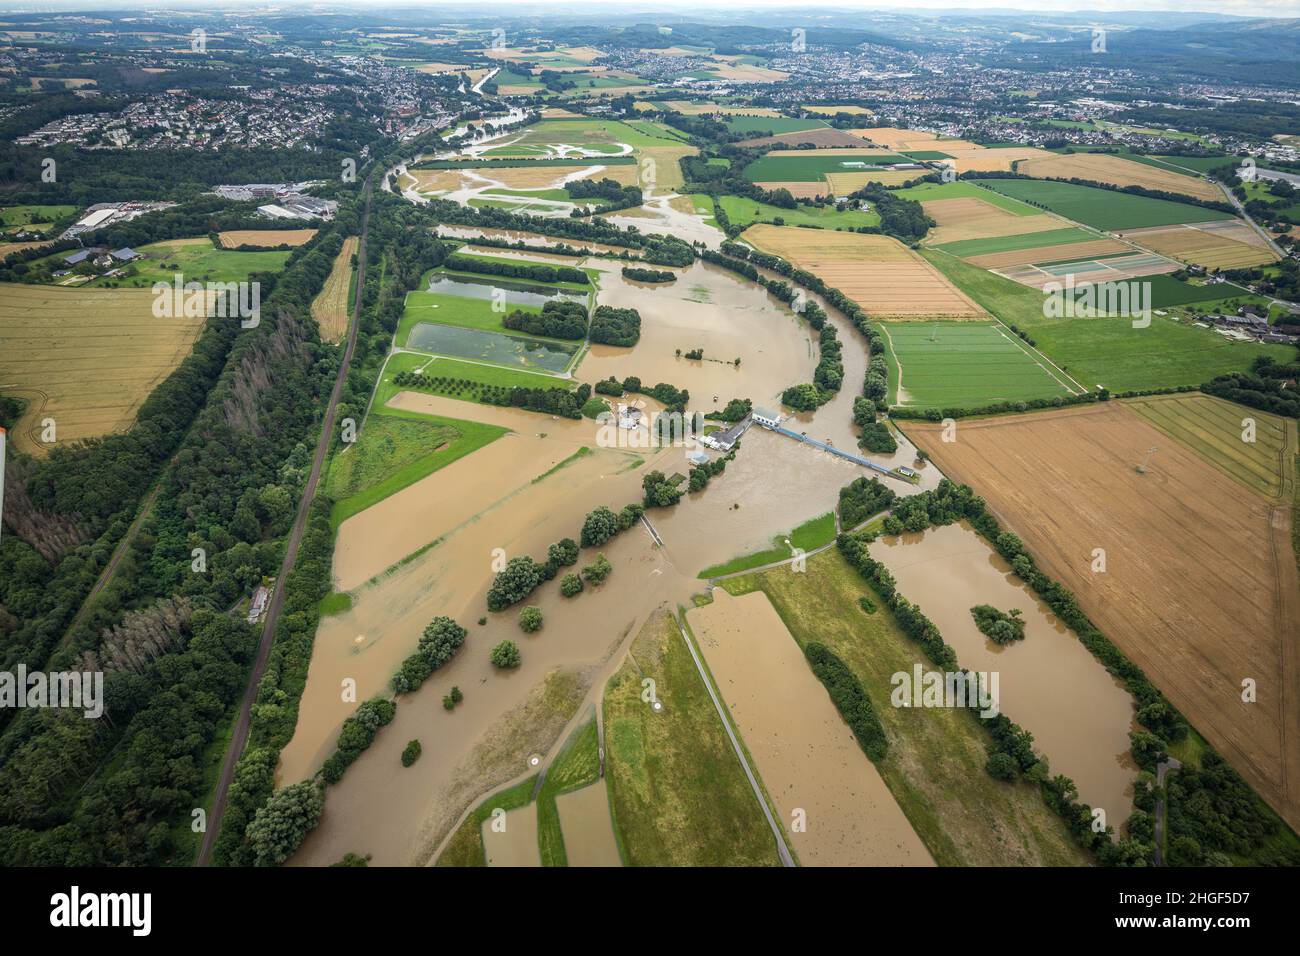 Vista aerea, alluvione della Ruhr, Halingen, Menden, zona della Ruhr, Renania settentrionale-Vestfalia, Germania, DE, Europa, vista degli uccelli, fotografia aerea, fotogr aereo Foto Stock